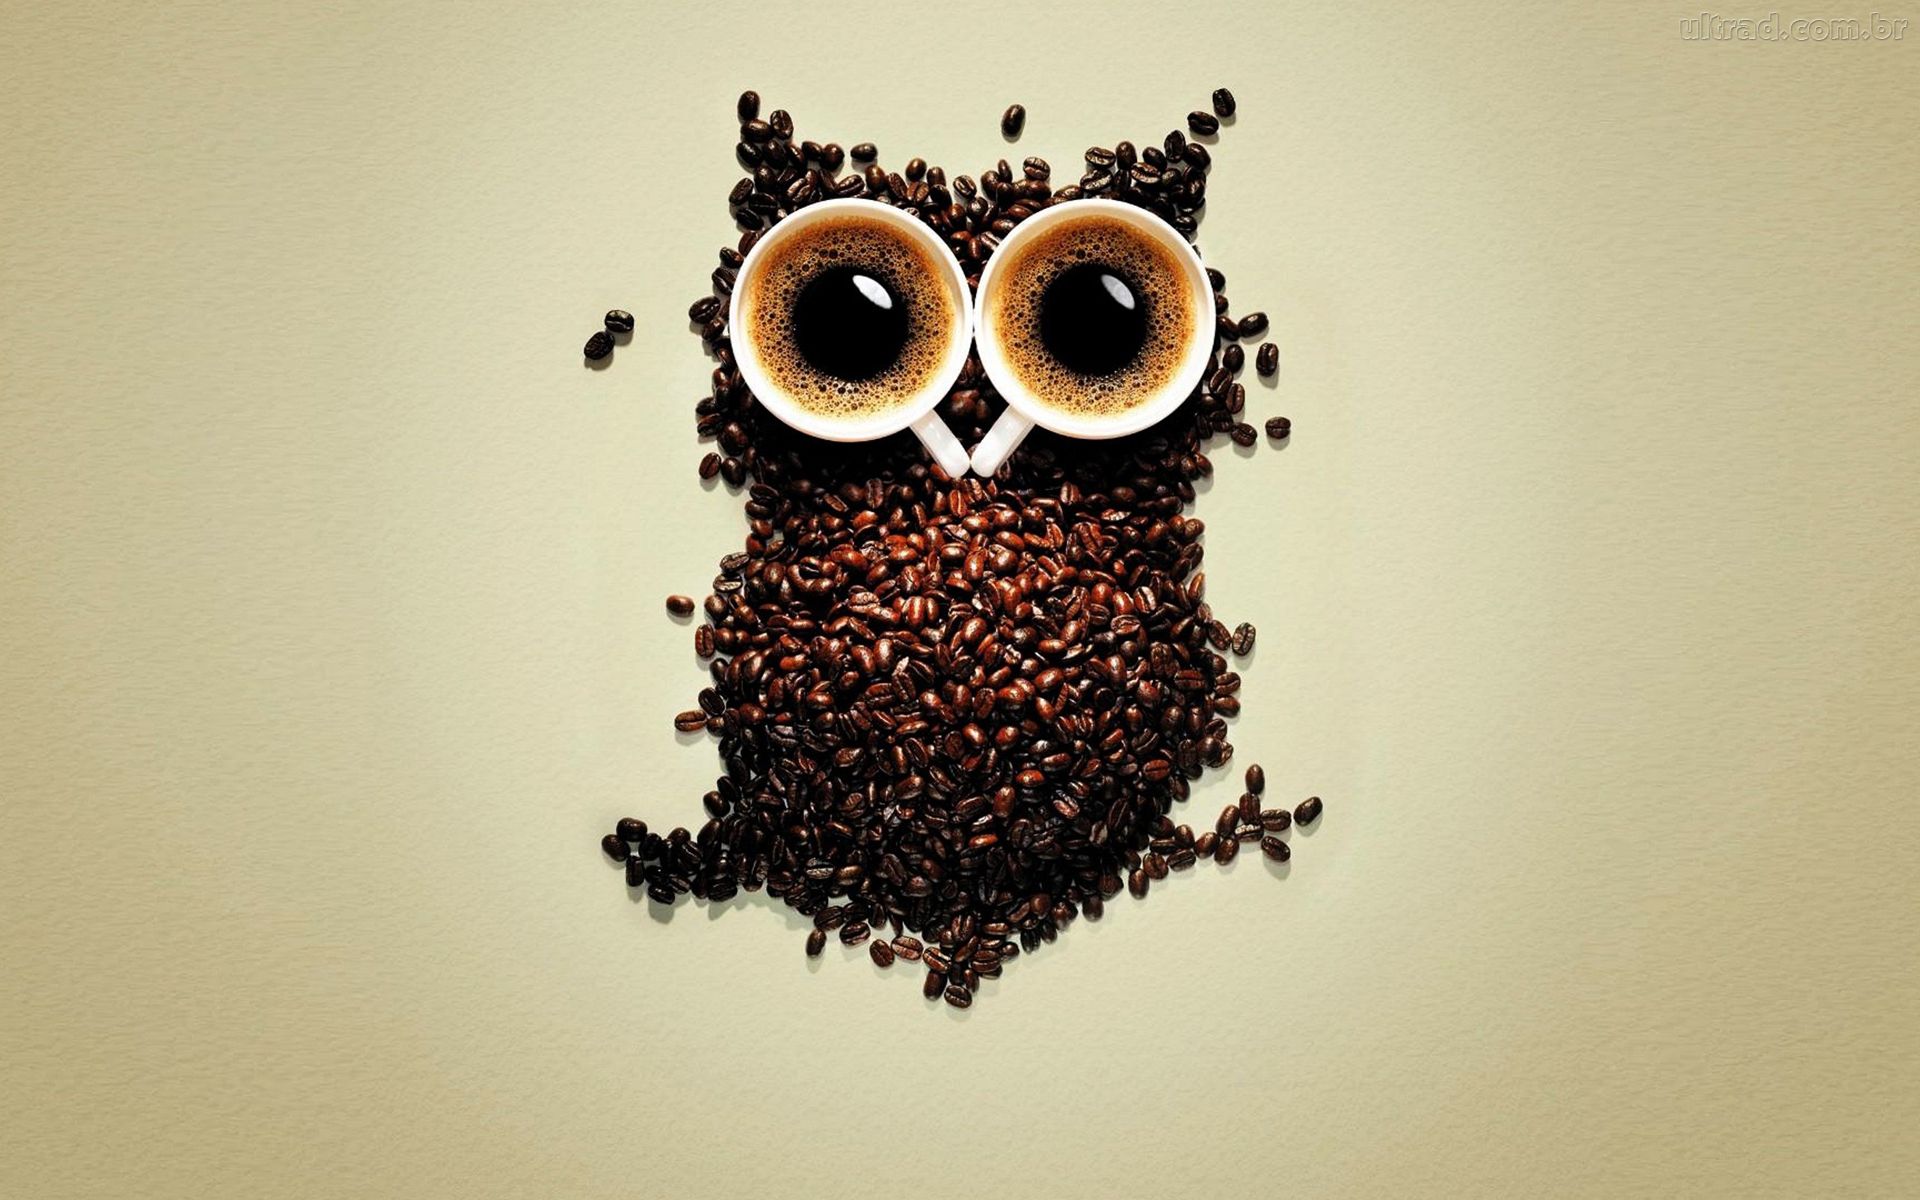 Owl Coffee Art Wallpaper - HD Wallpaper 